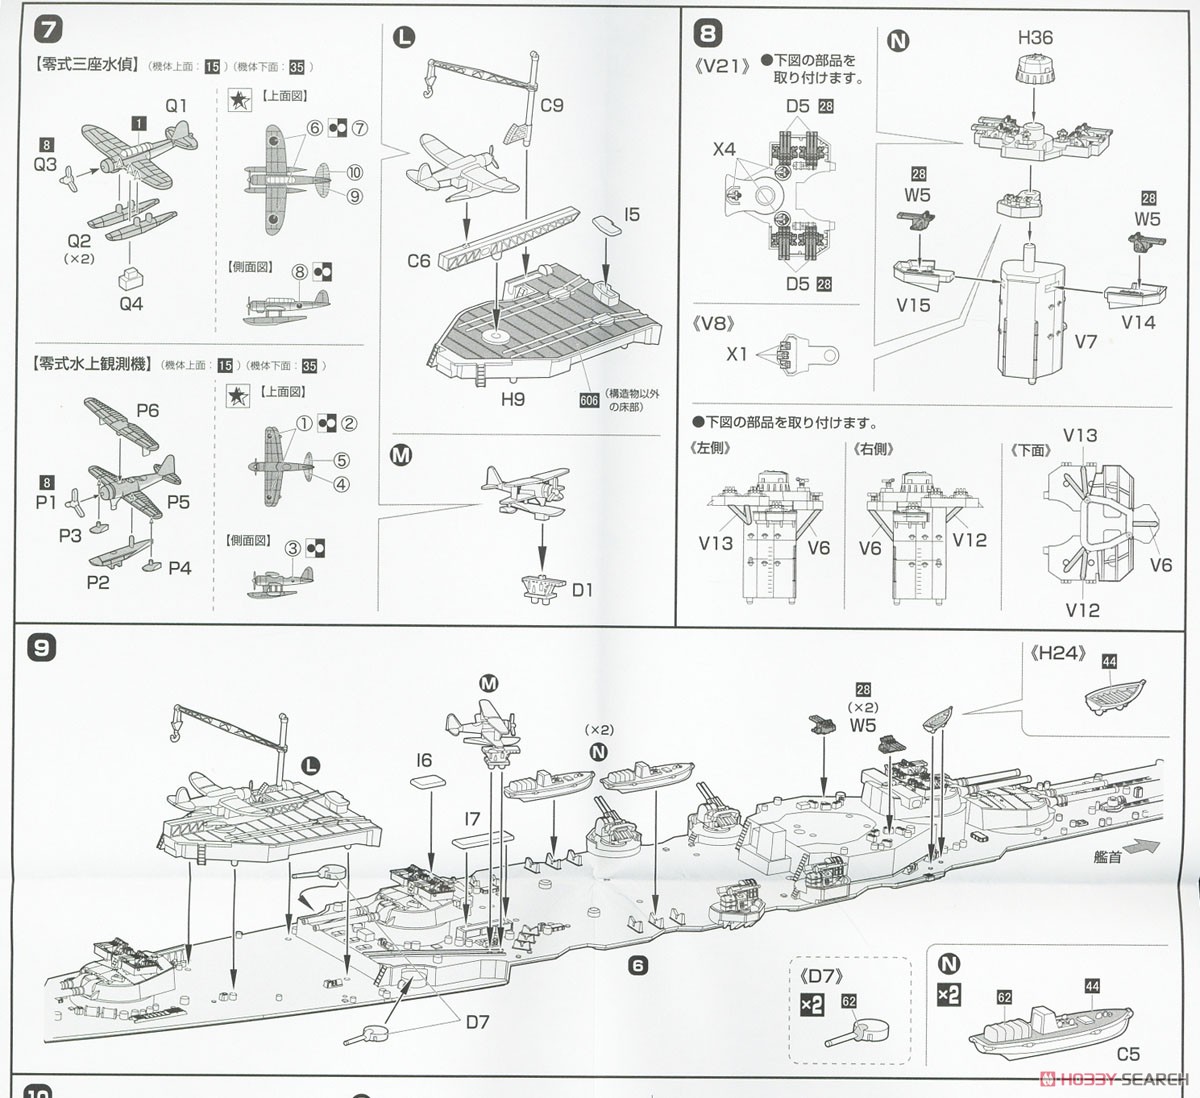 日本海軍高速戦艦 榛名 昭和19年 (捷一号作戦) フルハルモデル (プラモデル) 設計図4